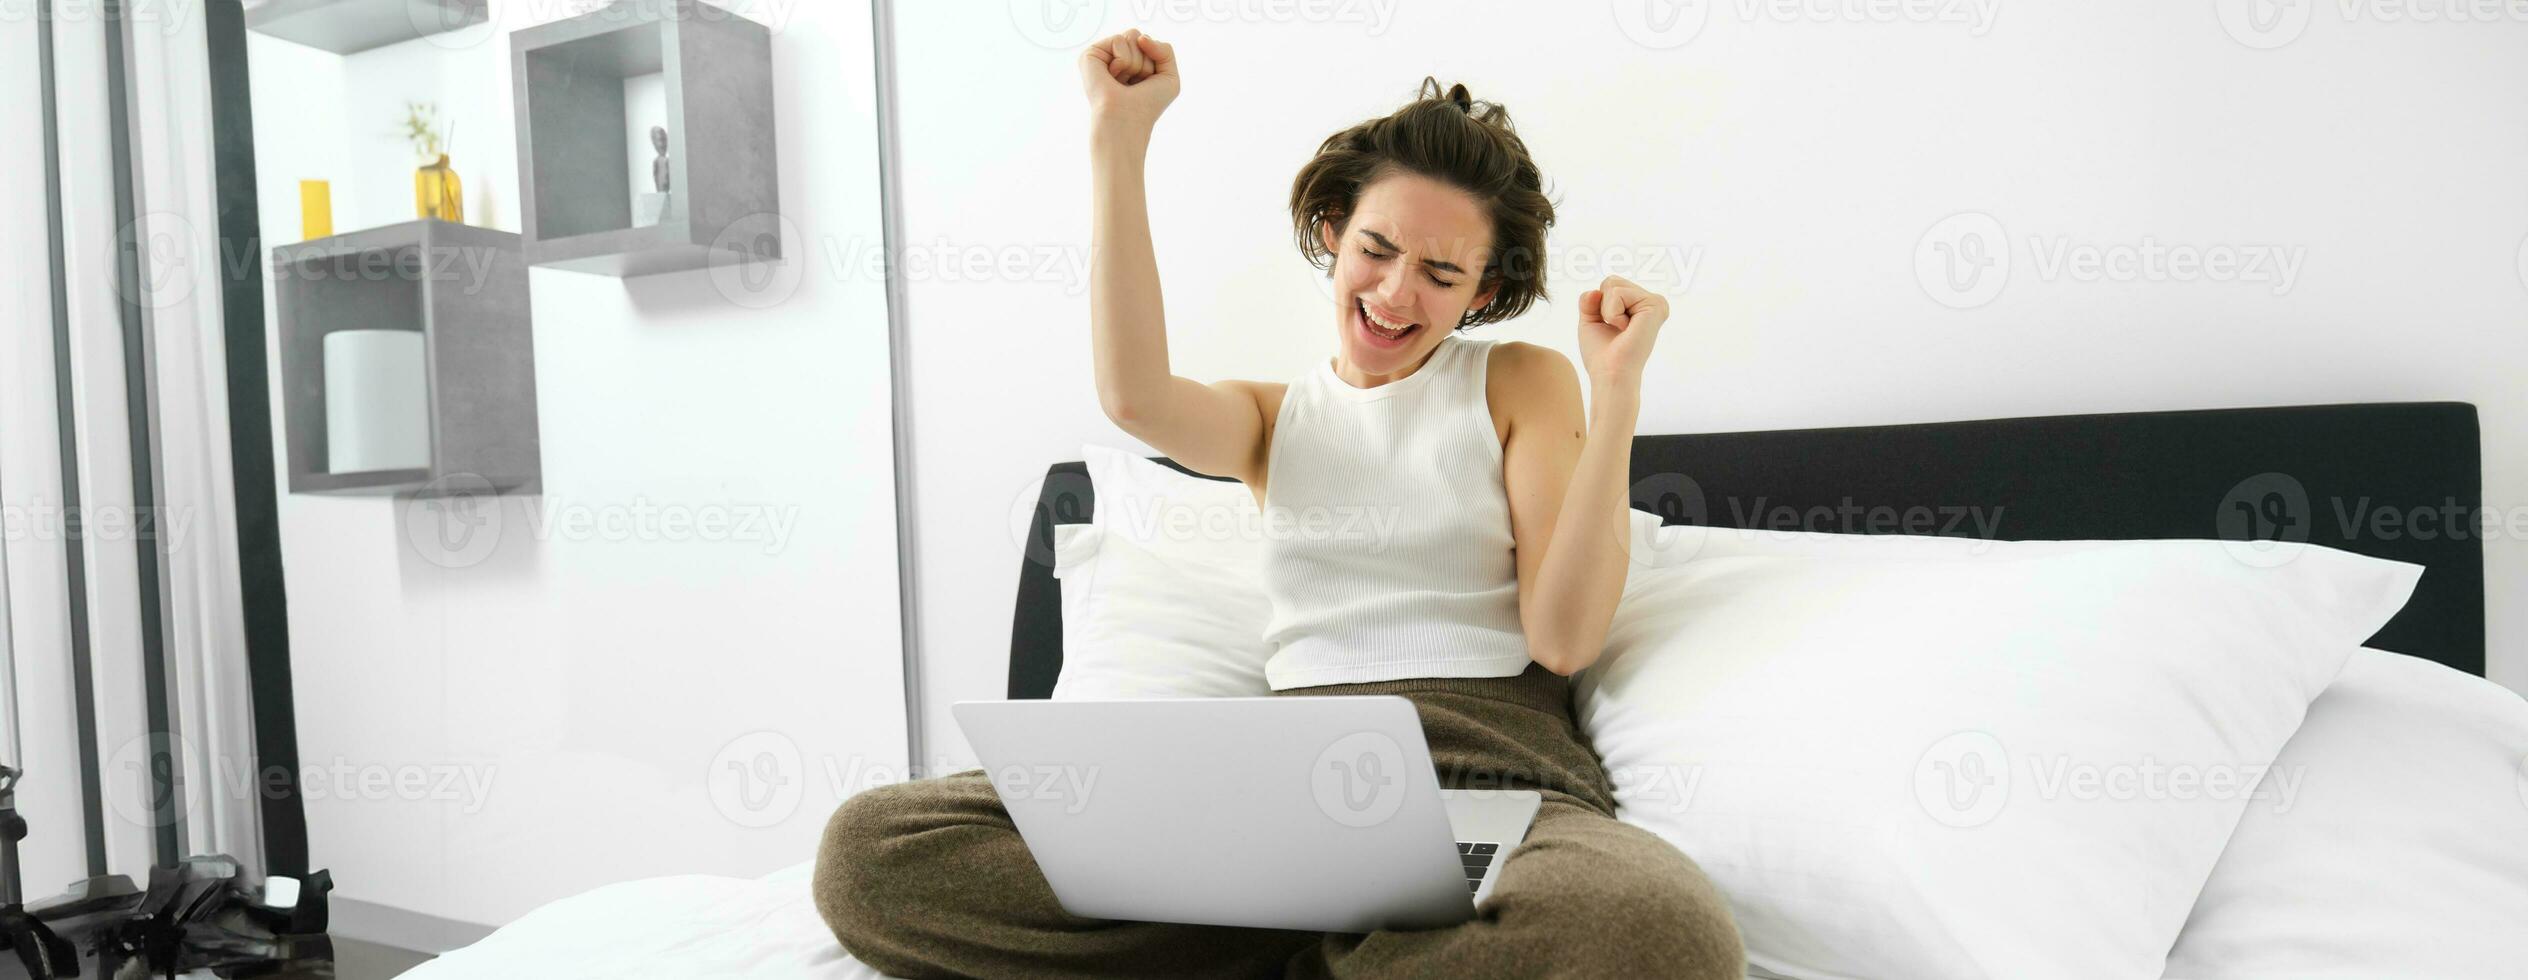 retrato de contento mujer alegría, sentado con computadora y haciendo ganador bailar, tiene ordenador portátil en su vueltas, levantamiento manos arriba y celebrando, triunfando con alegría foto